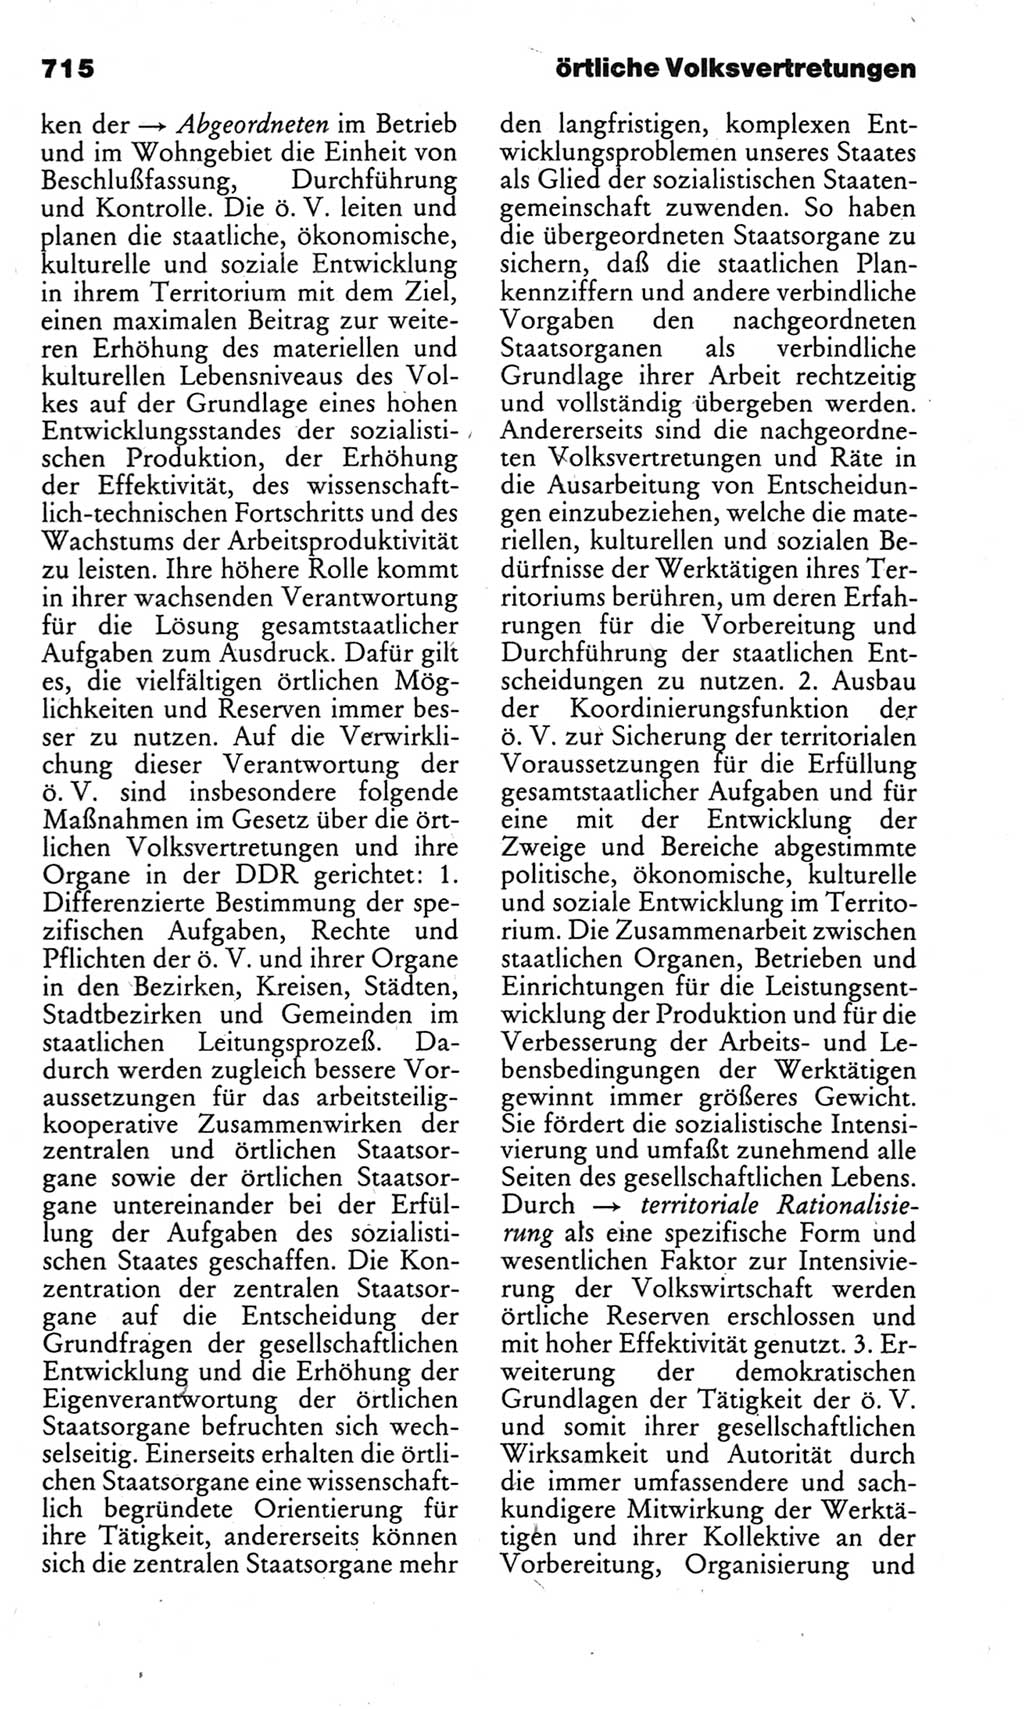 Kleines politisches Wörterbuch [Deutsche Demokratische Republik (DDR)] 1983, Seite 715 (Kl. pol. Wb. DDR 1983, S. 715)